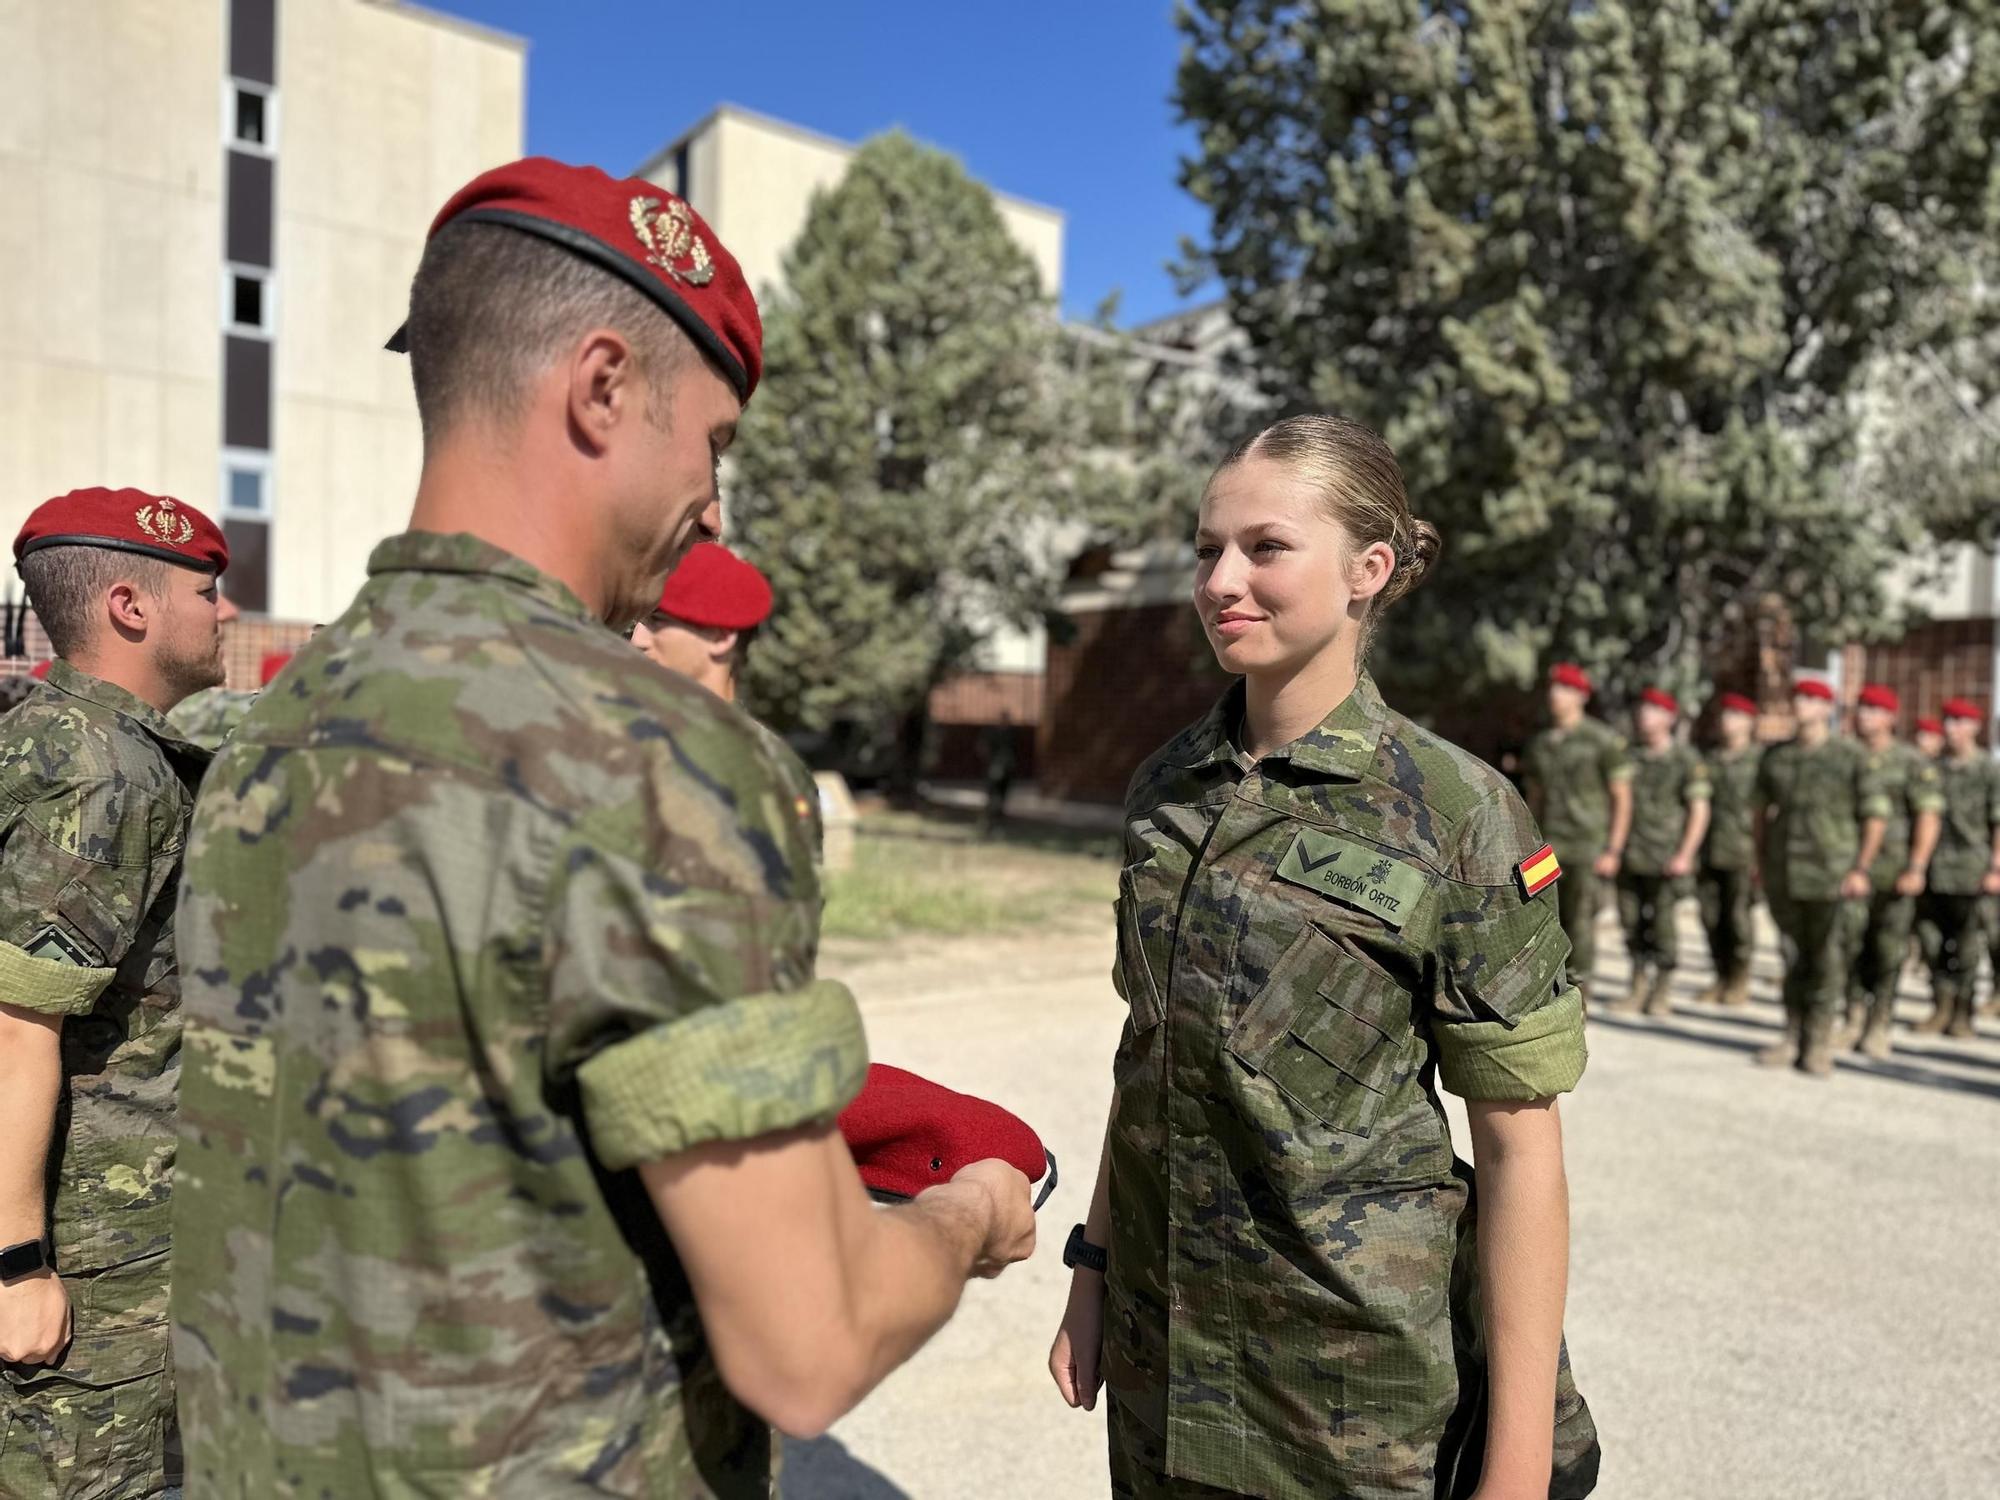 Kronprinzessin Leonor beim Militär: So läuft die Ausbildung zur Soldatin